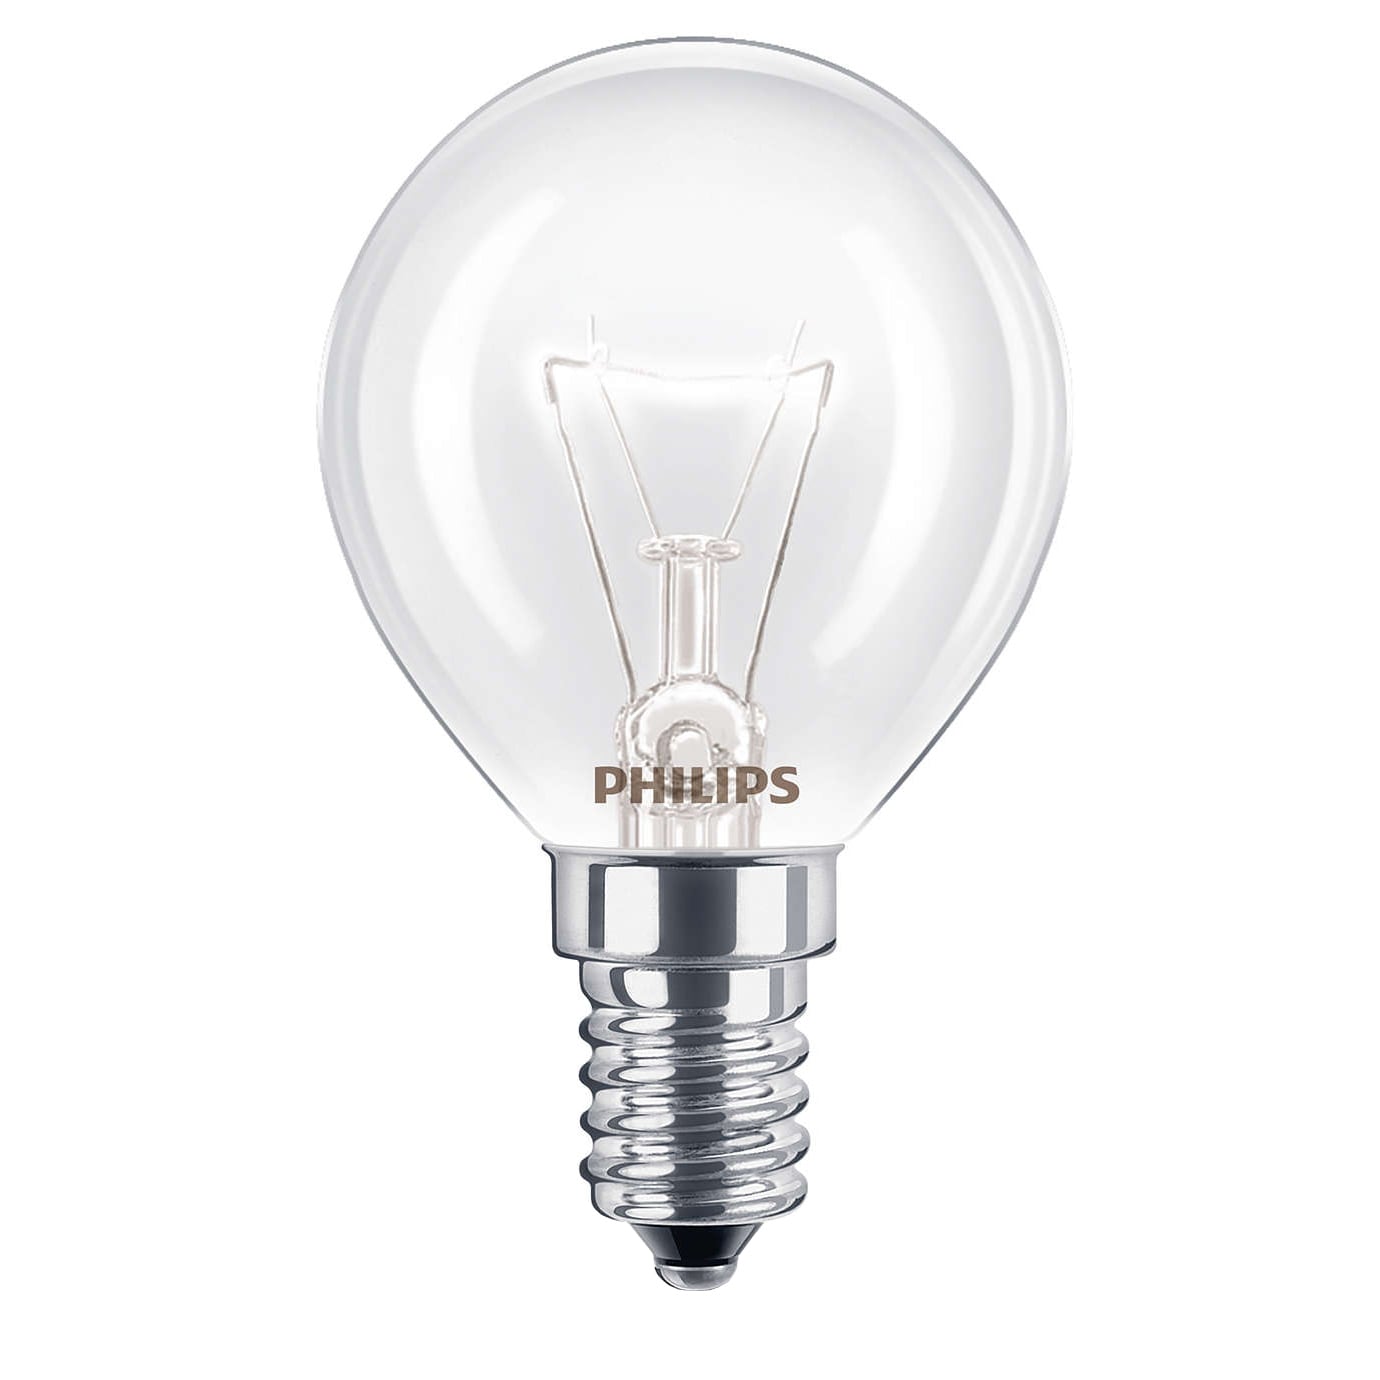 Philips hehkulamppu uuniin 8711500029331 - Gigantti verkkokauppa